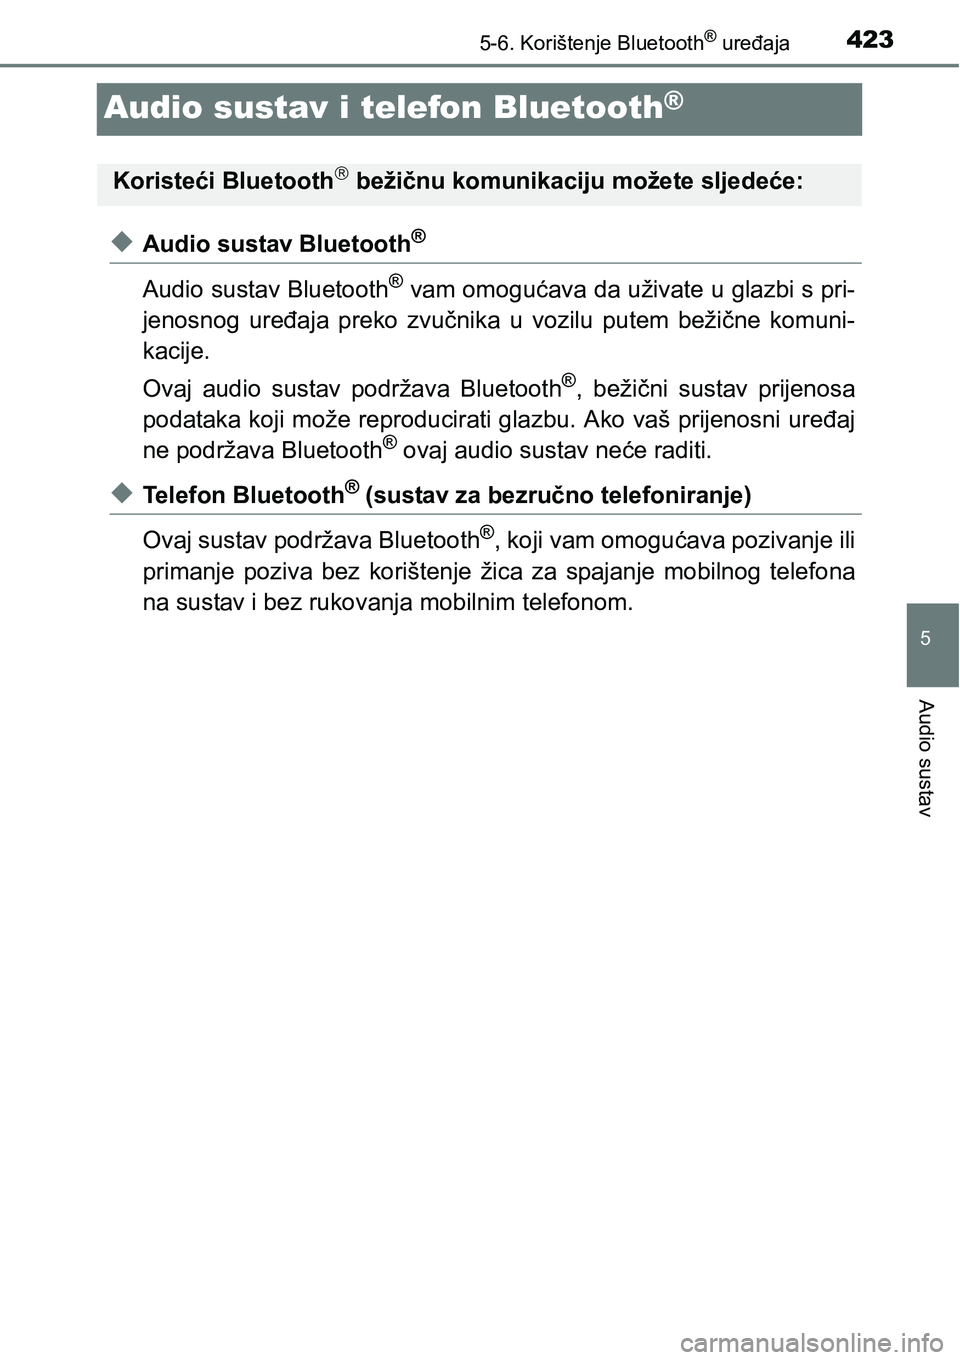 TOYOTA RAV4 2015  Upute Za Rukovanje (in Croatian) 423
5
5-6. Korištenje Bluetooth® uređaja
Audio sustav
Audio sustav i telefon Bluetooth®
uAudio sustav Bluetooth®
Audio sustav Bluetooth® vam omogućava da uživate u glazbi s pri-
jenosnog  ure�